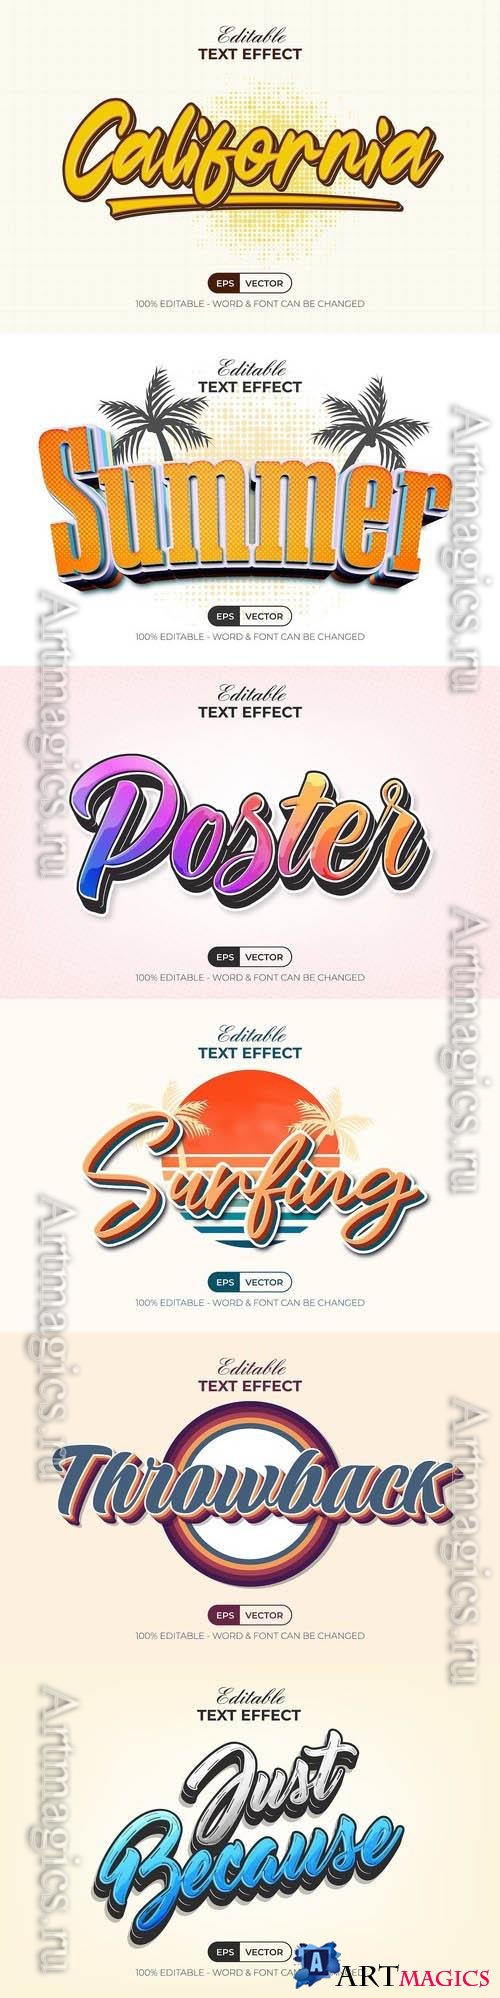 Vector 3d text editable, text effect font vol 200